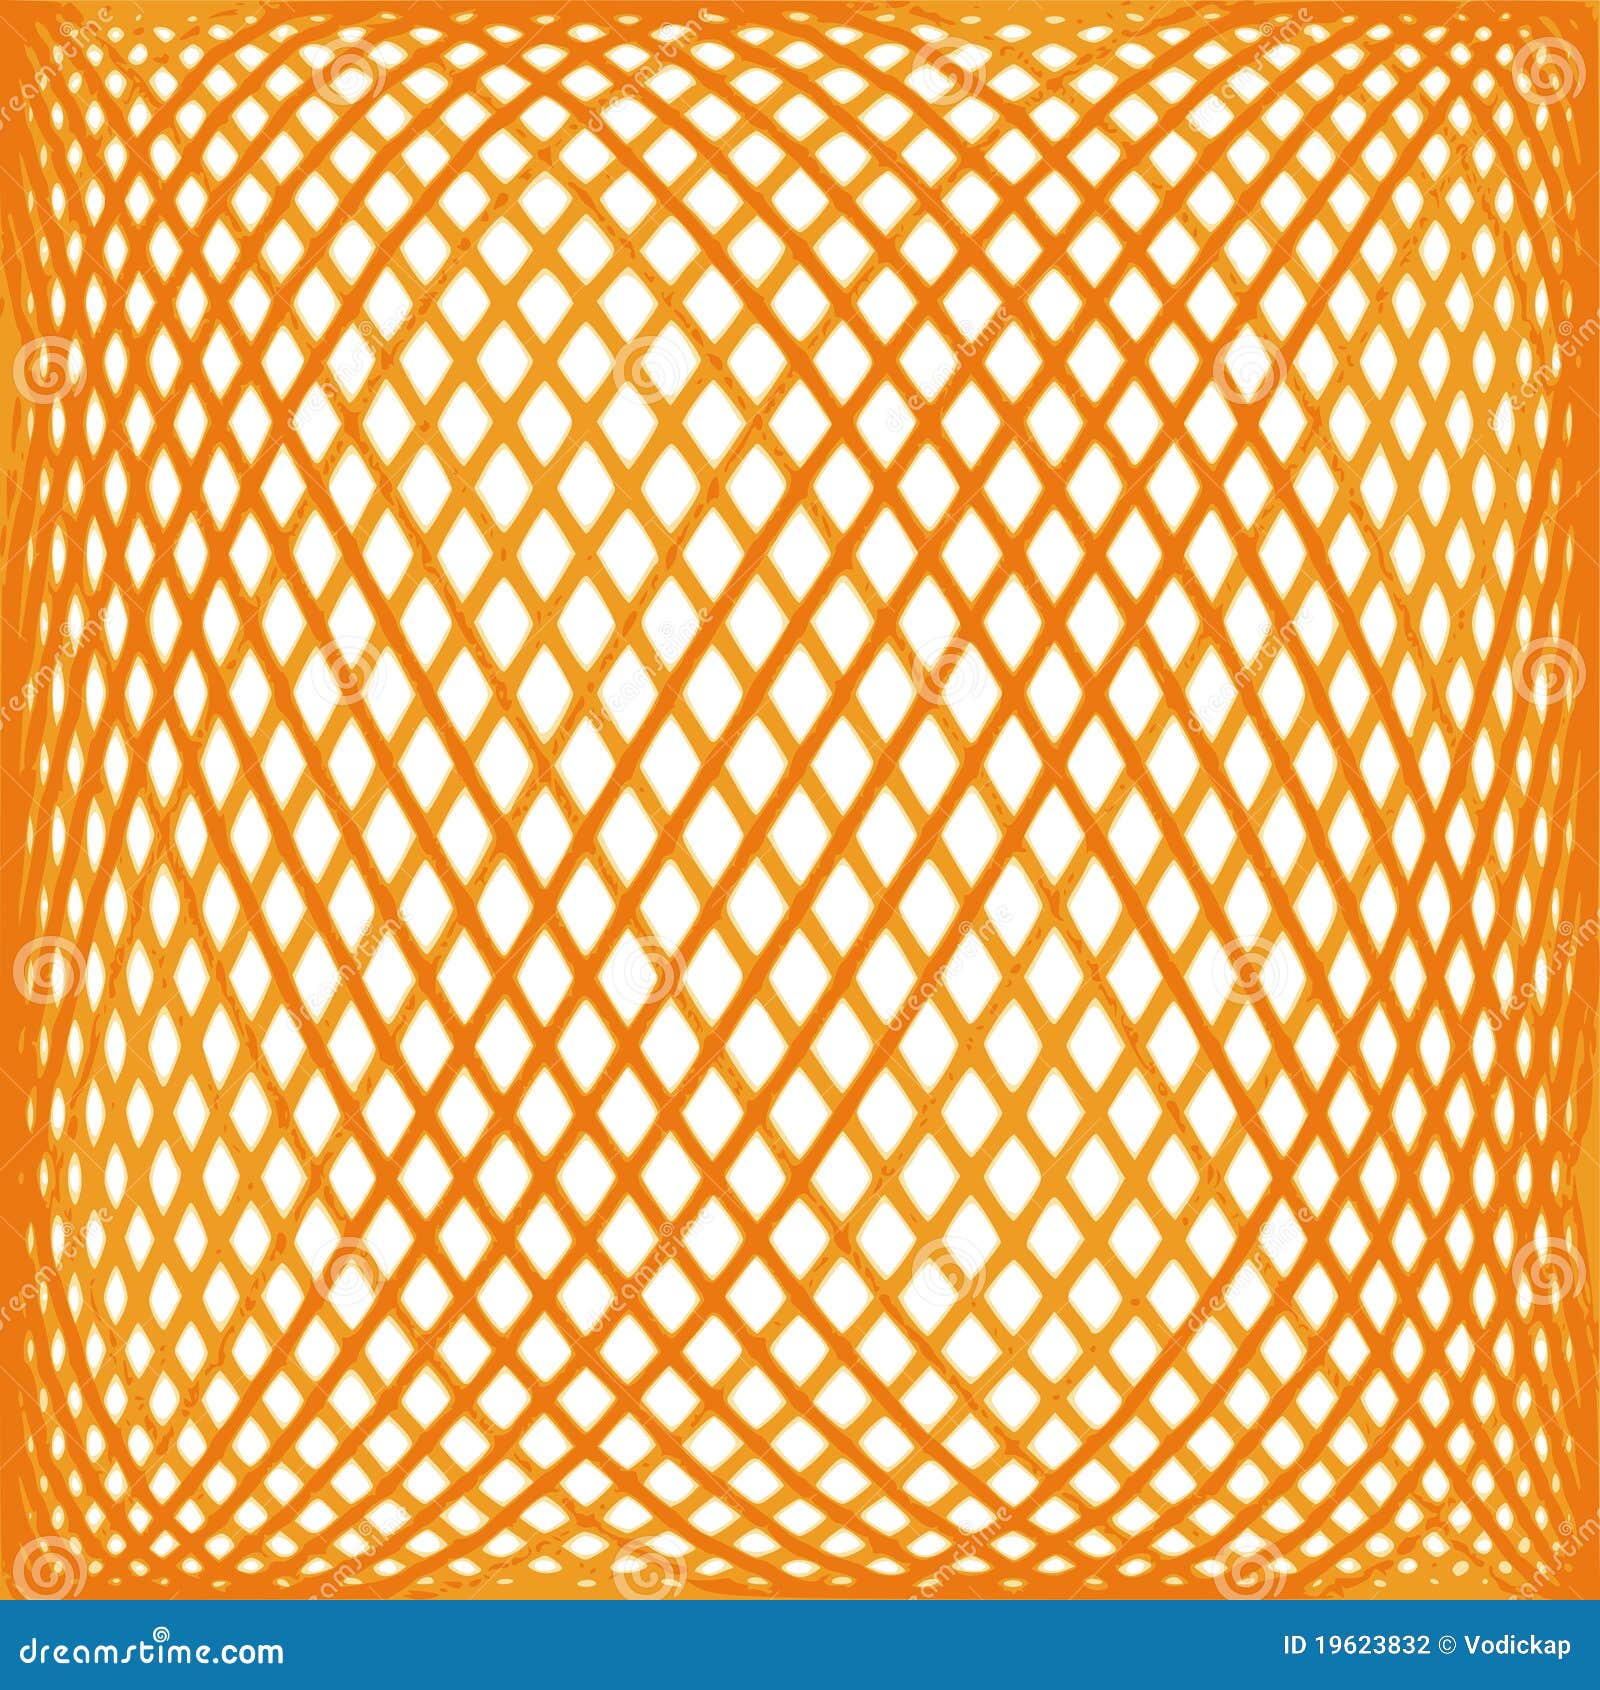 orange mesh pattern